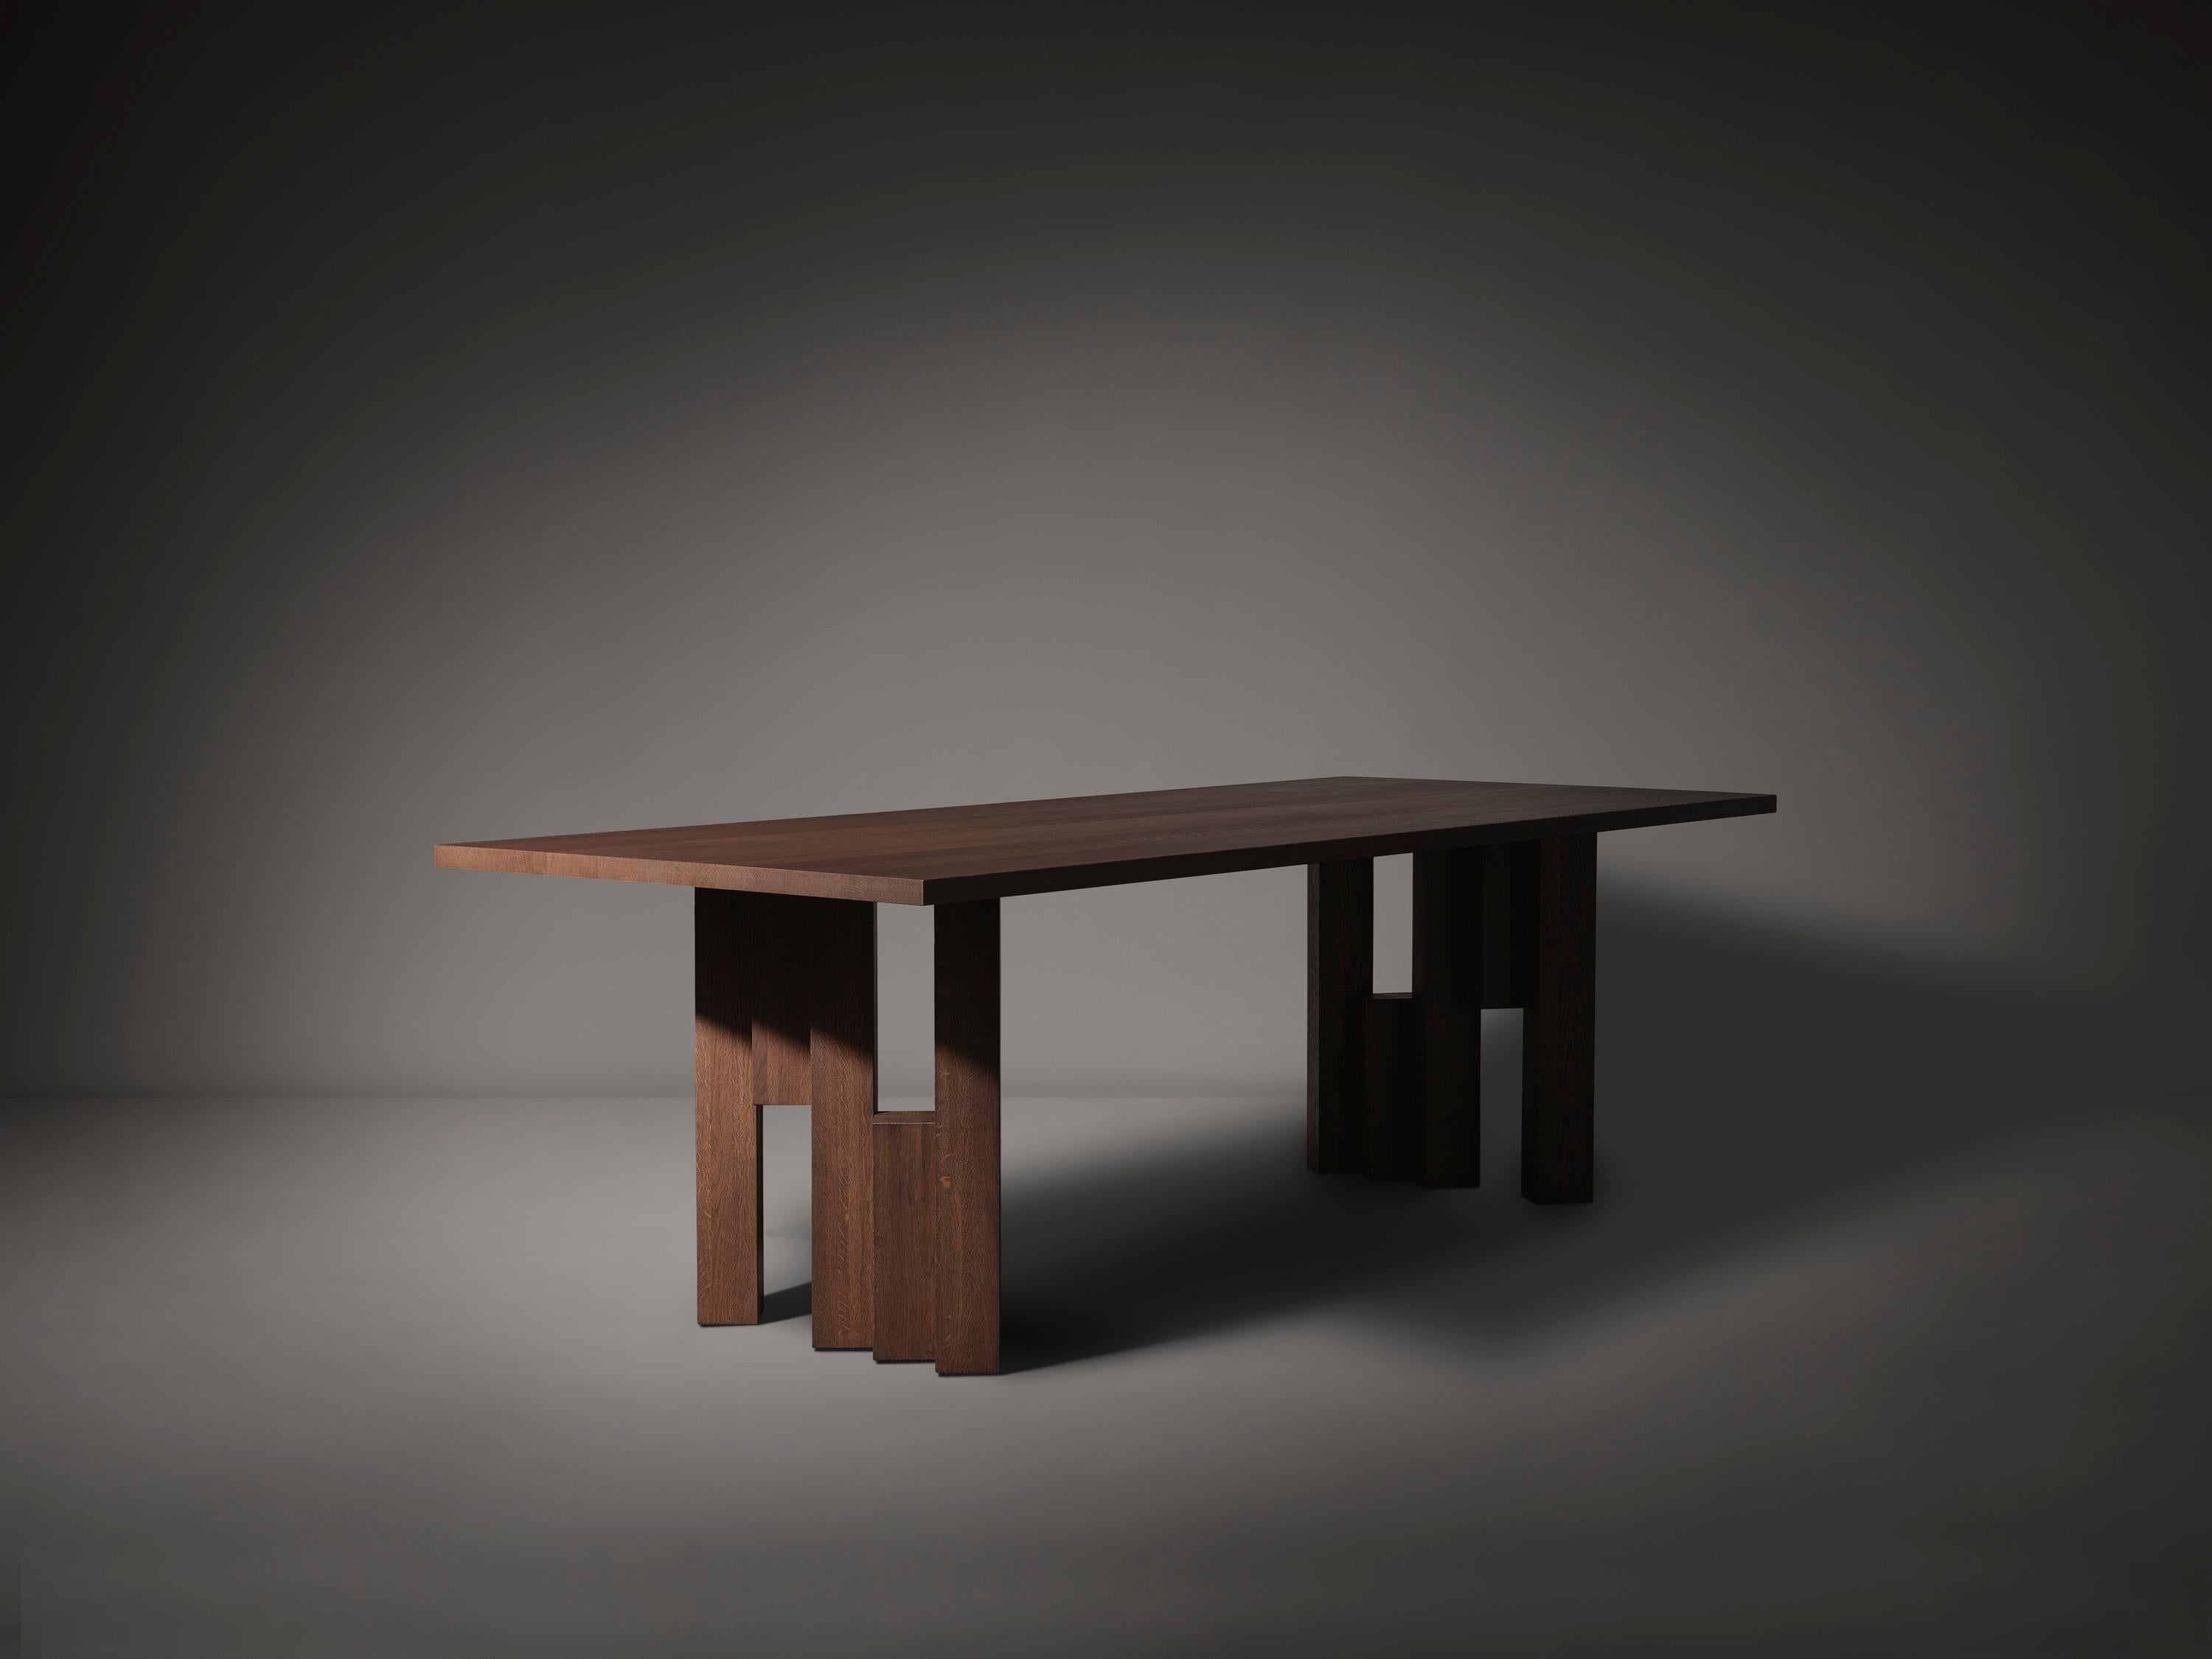 La table Fenestra, inspirée du style de l'école d'Amsterdam, est fabriquée en bois massif et sur mesure. Le design s'inspire de l'expressionnisme des briques, le mouvement architectural visible dans la zone du 